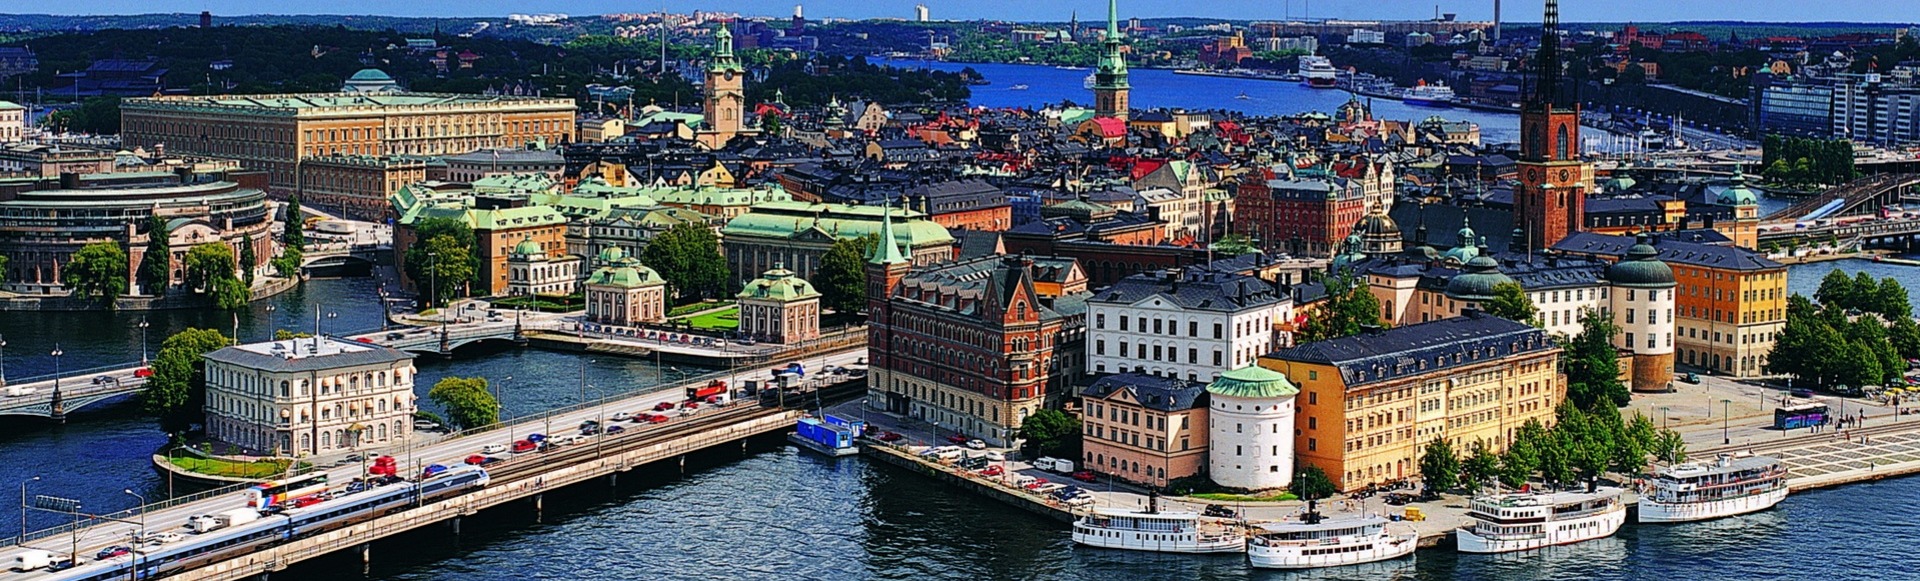 С 22 по 28 марта 2021 года пройдет чемпионат мира по фигурному катанию в Стокгольме!
